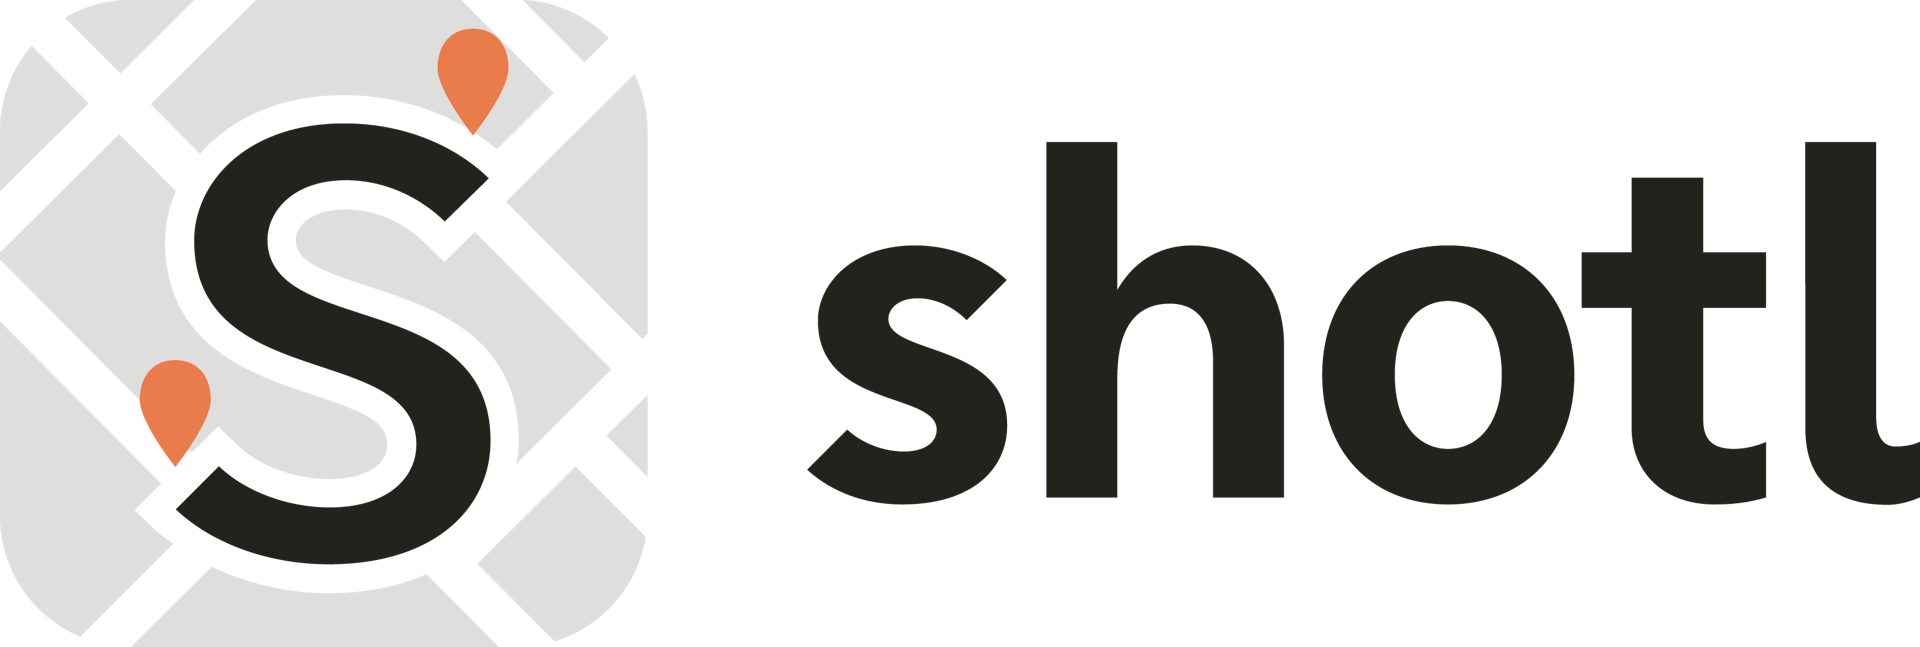 Shotl-new-logo